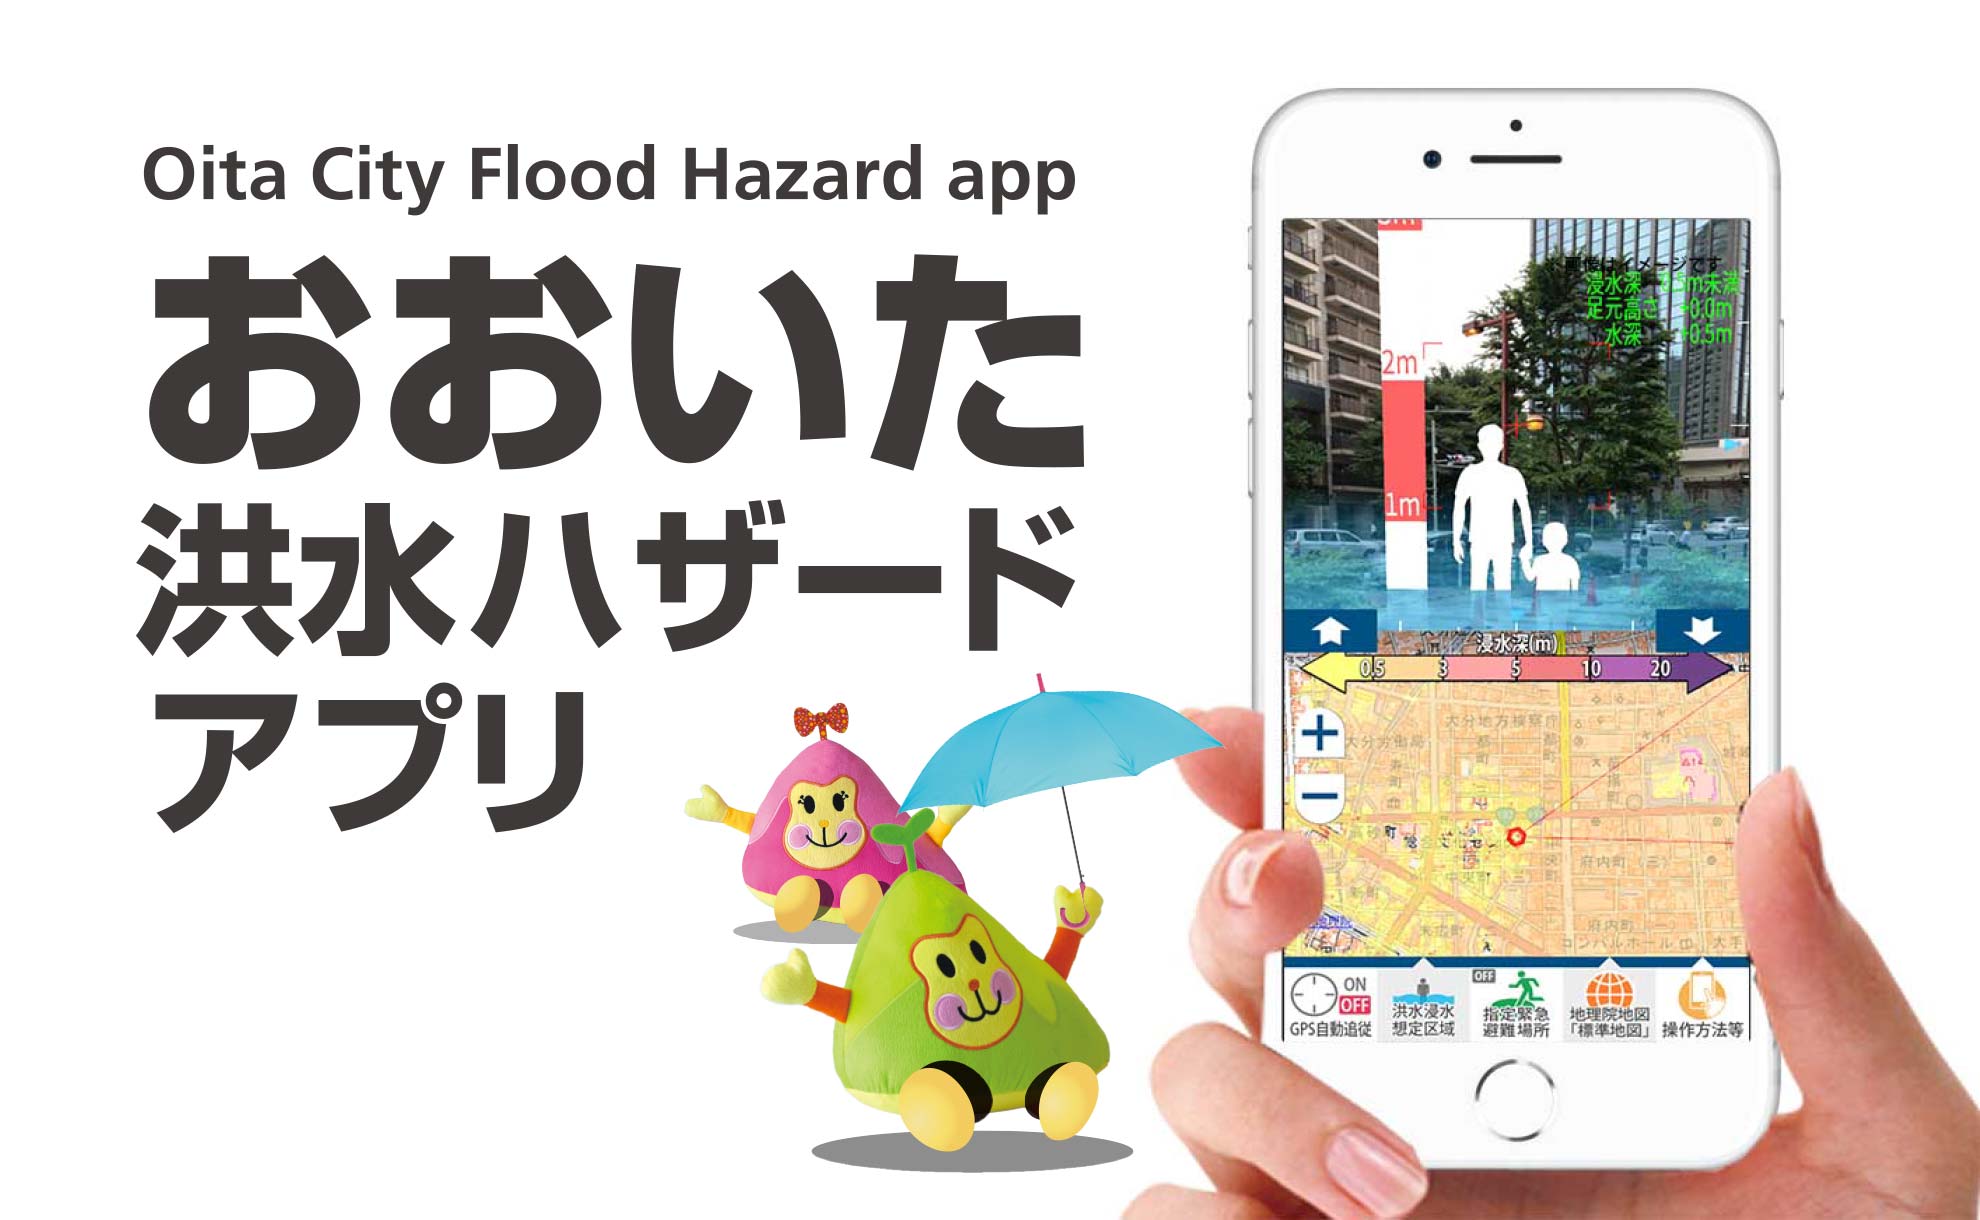 防災情報可視化ARアプリ『おおいた洪水ハザードアプリ』をリリースしました